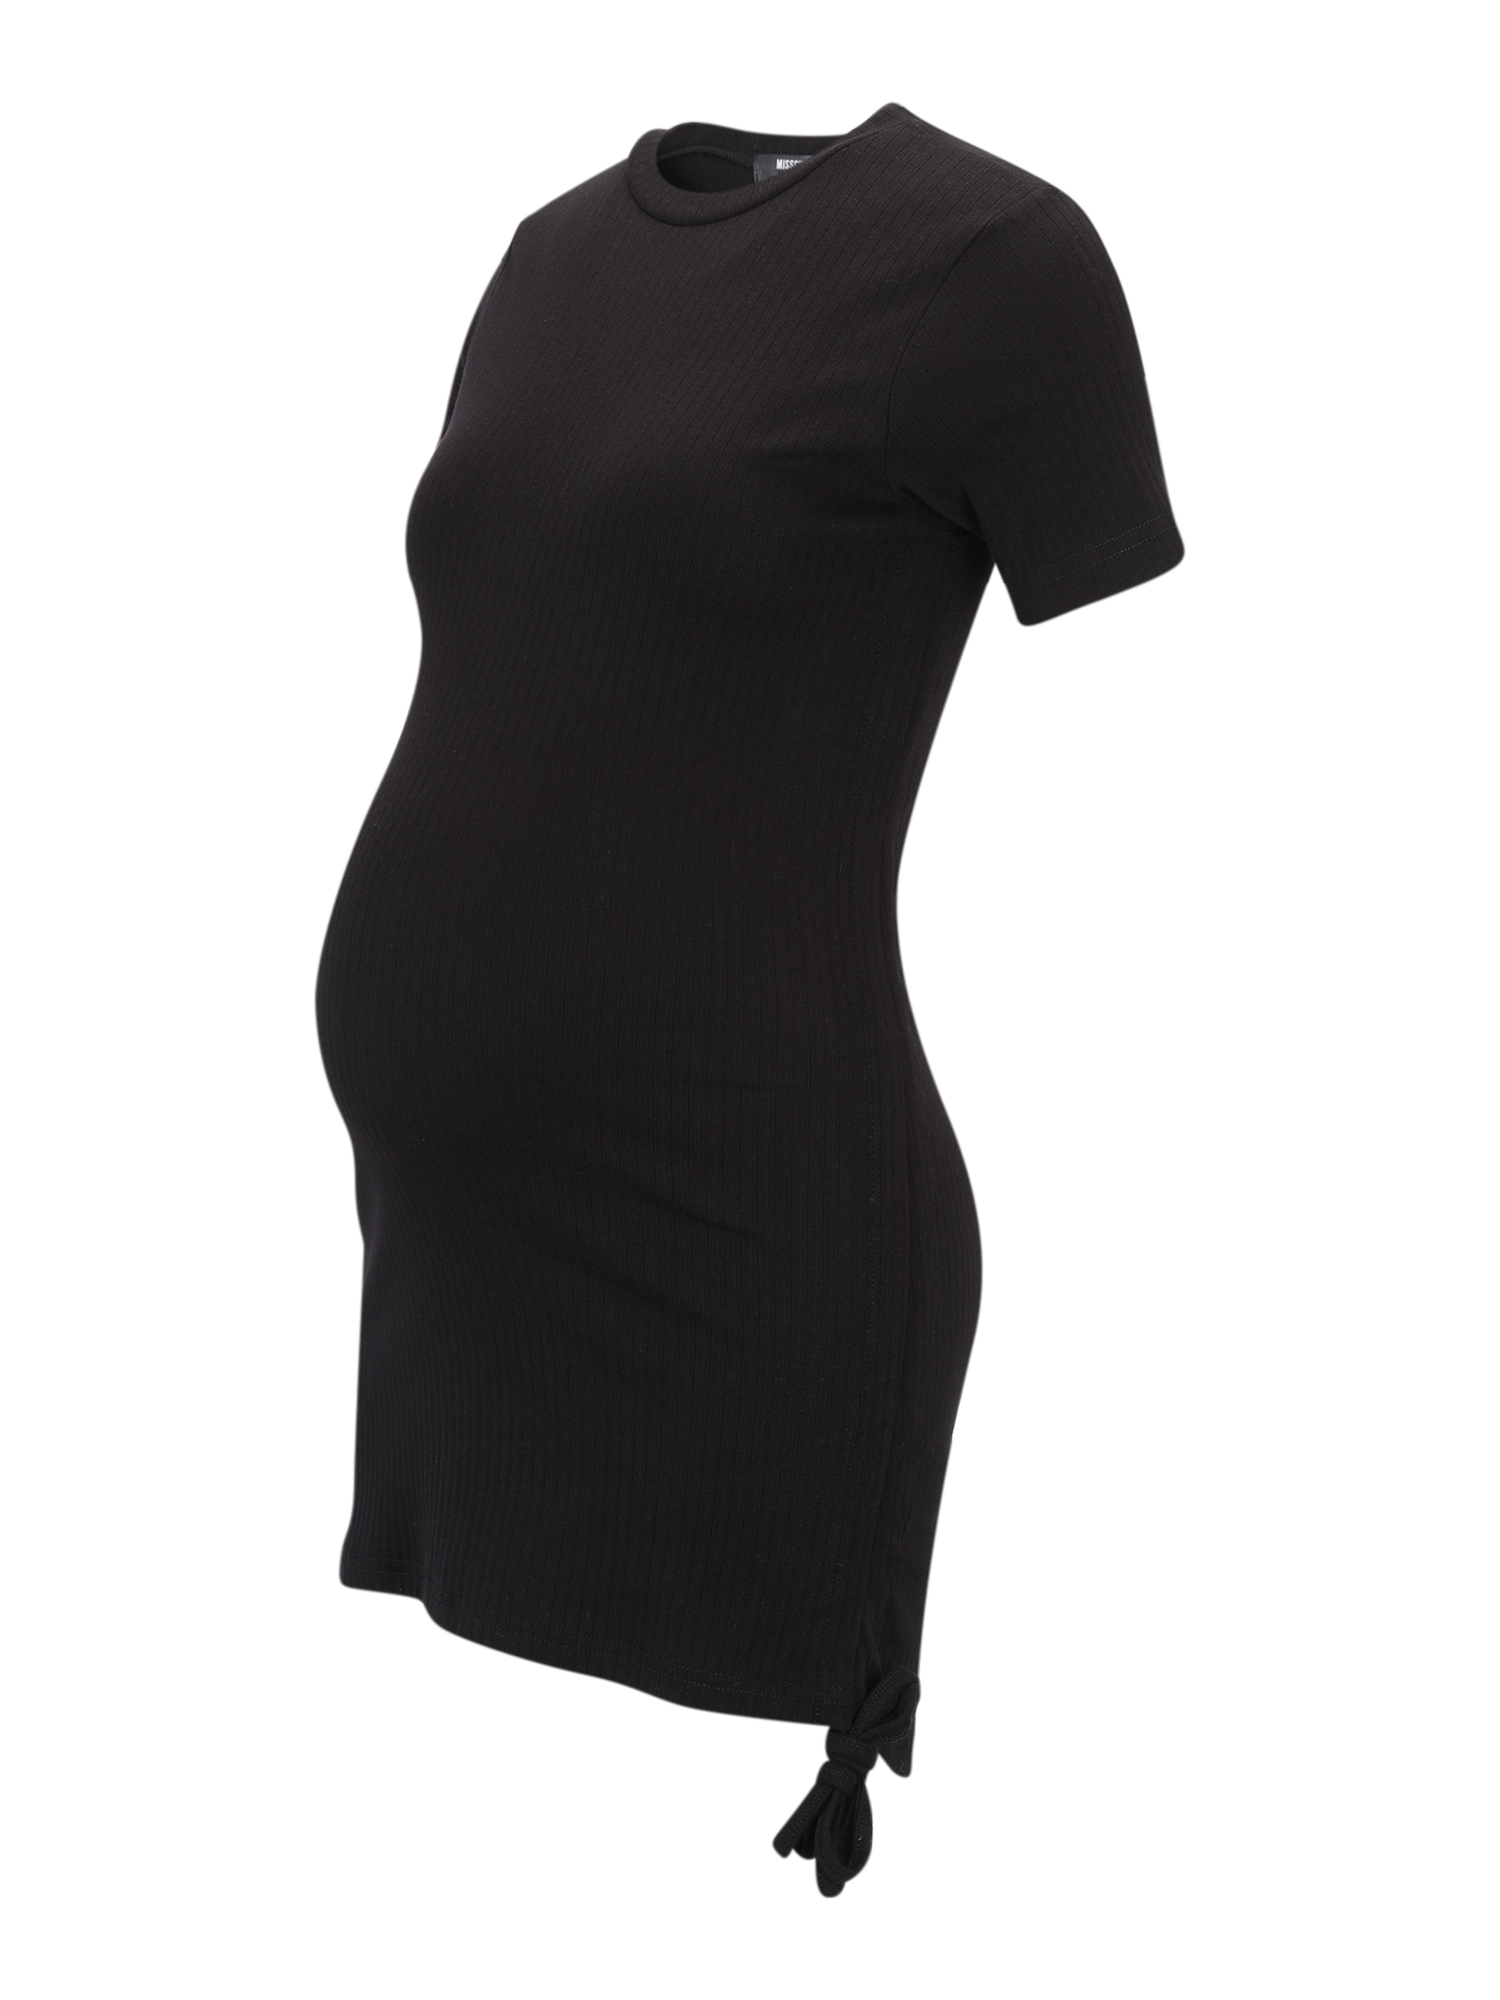 Odzież Kobiety Missguided Maternity Koszulka RUSHED w kolorze Czarnym 